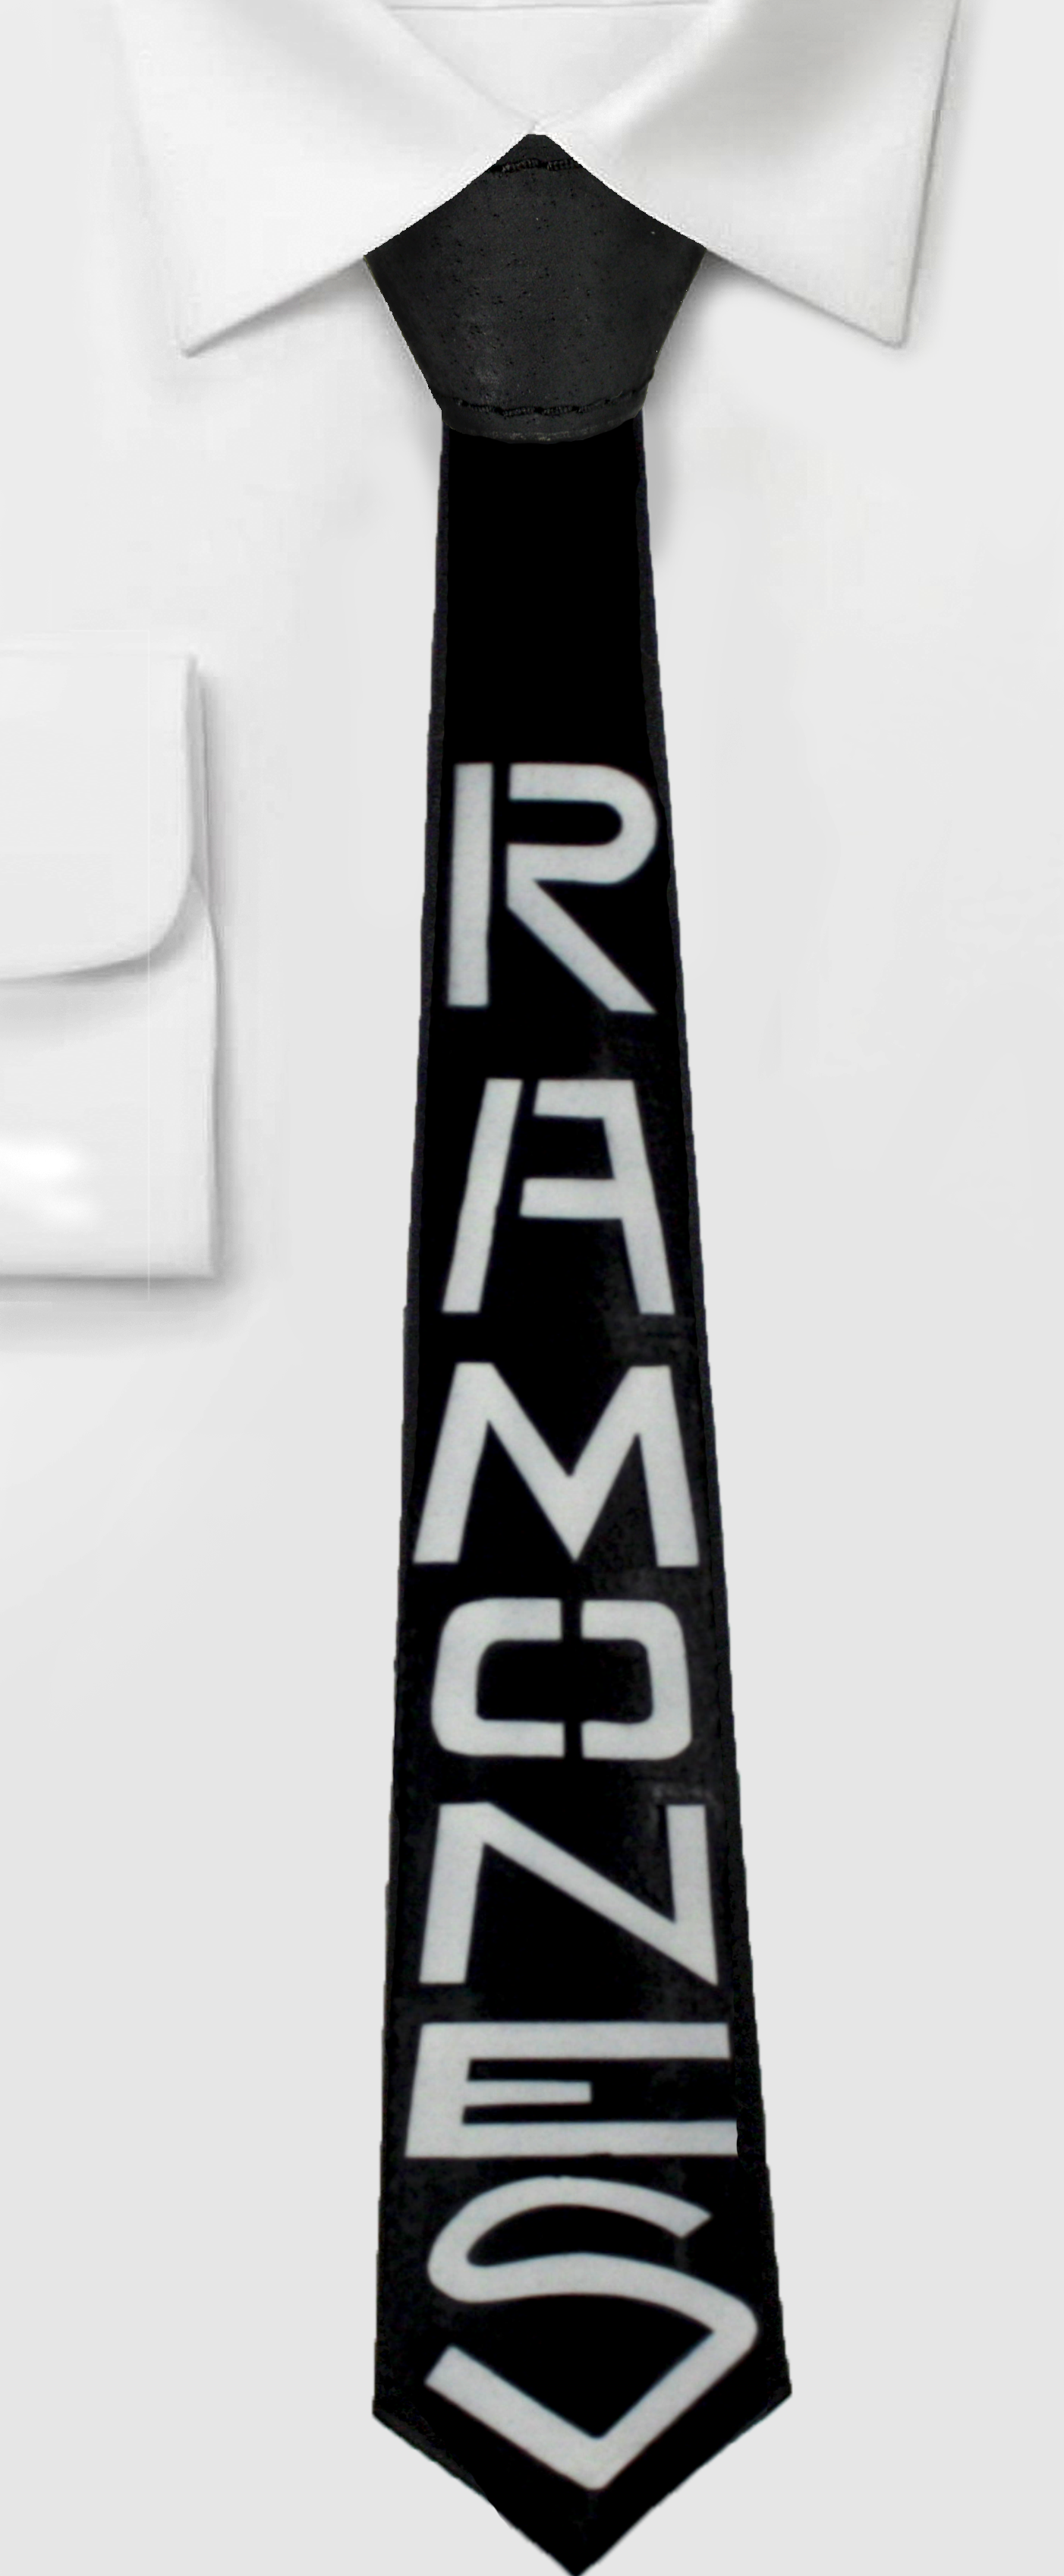 Галстук кожаный Ramones - фото 1 - rockbunker.ru